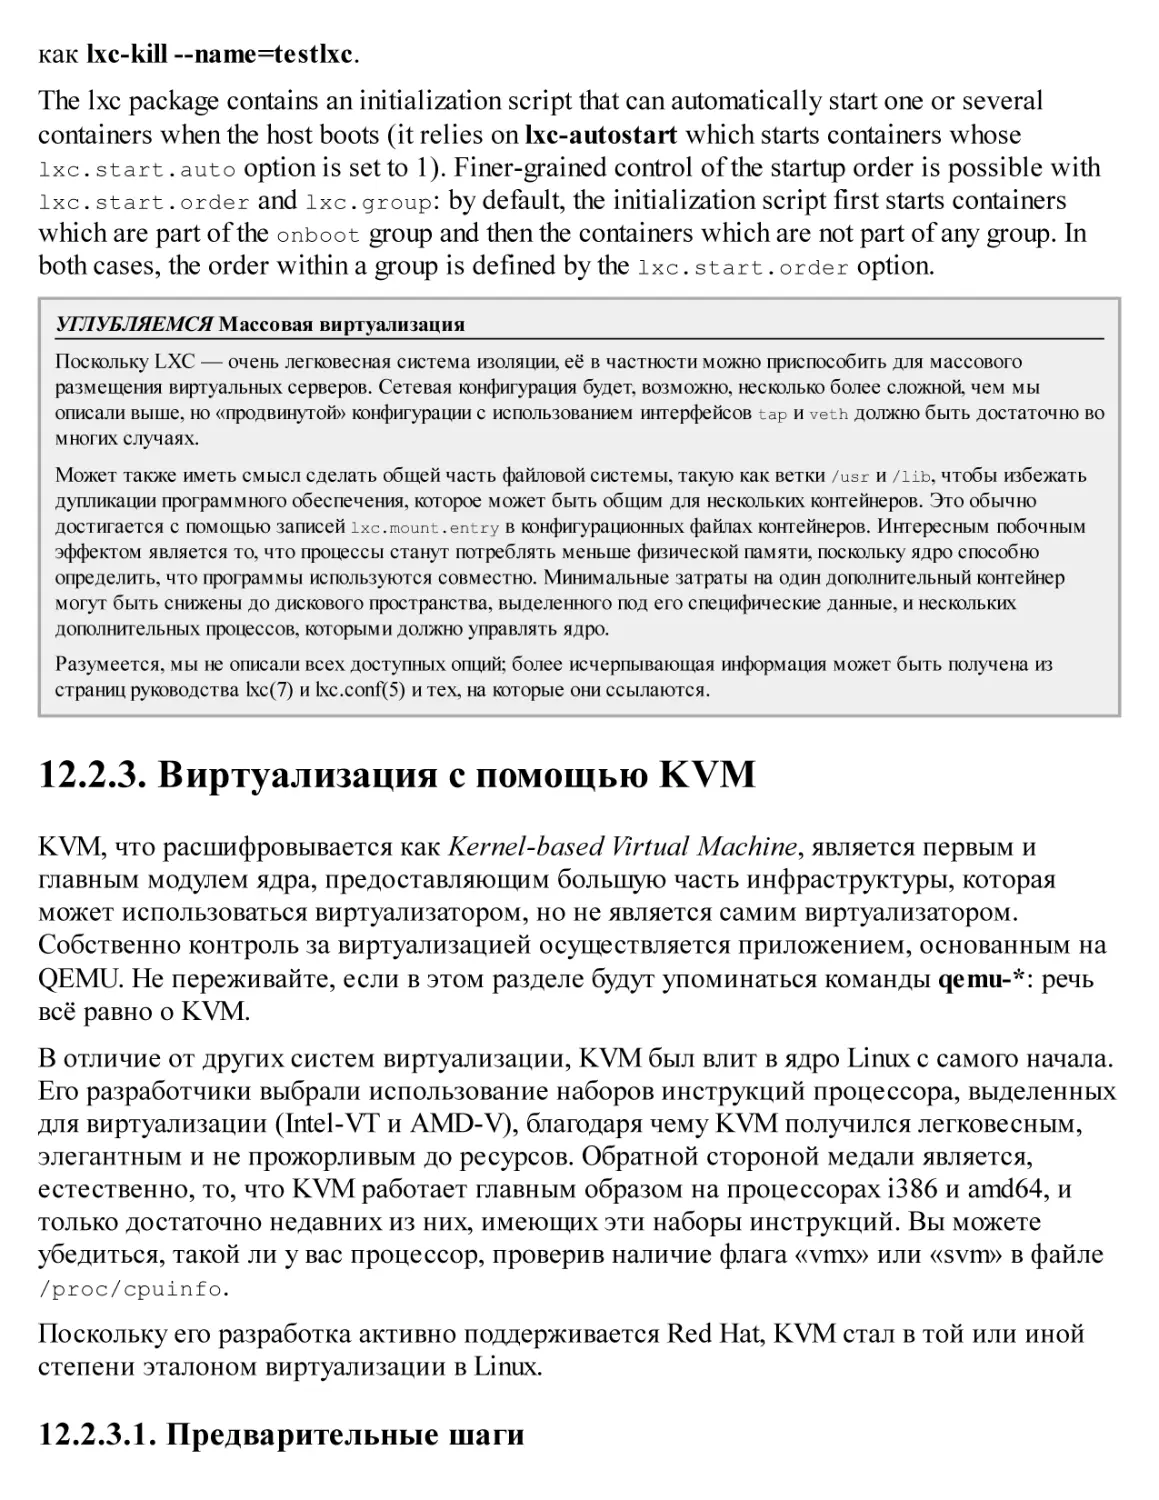 12.2.3. Виртуализация с помощью KVM
12.2.3.1. Предварительные шаги